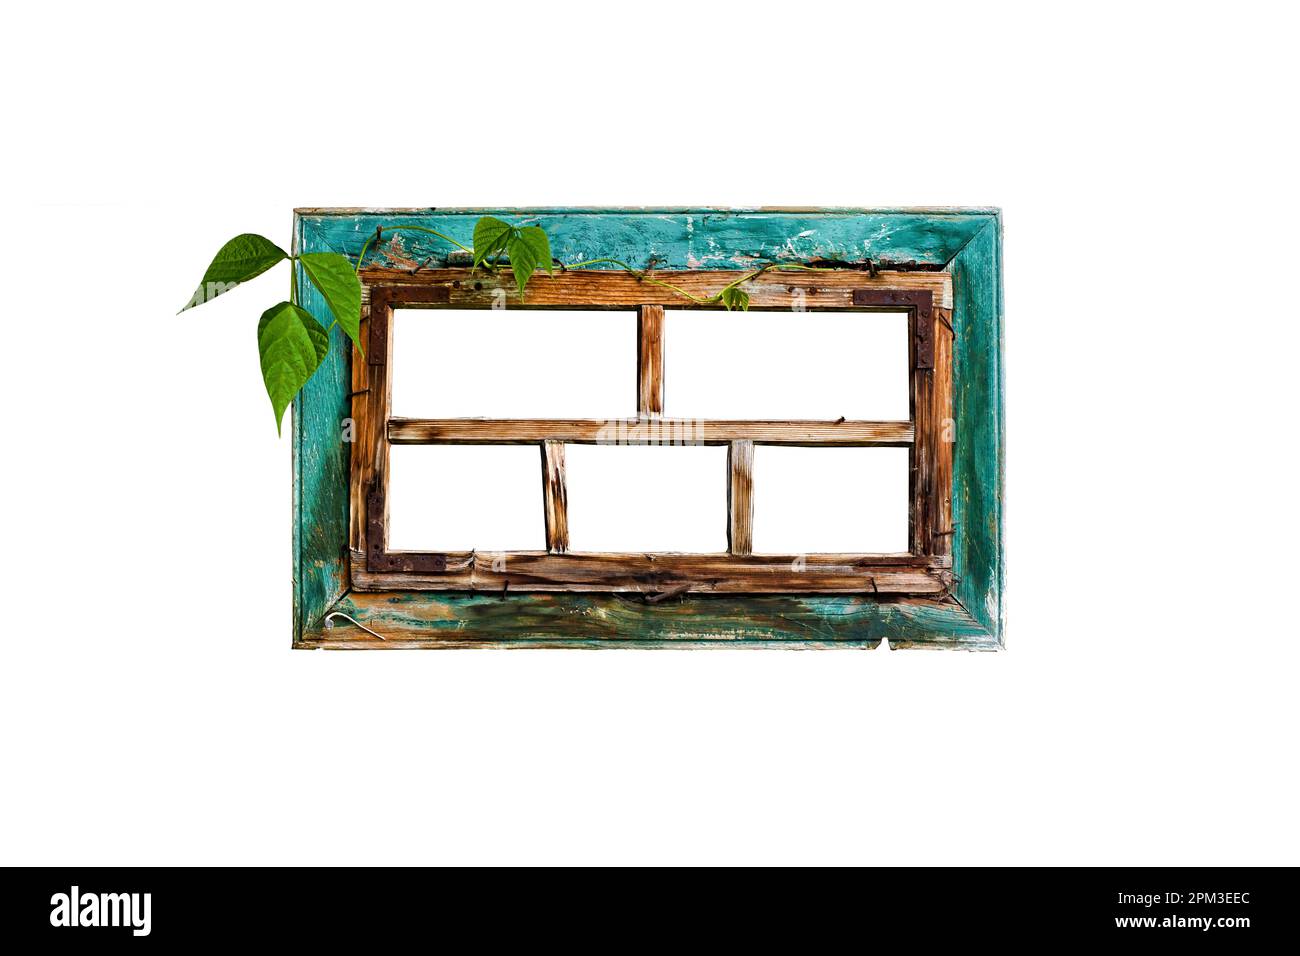 Sehr altmodischer Holzfensterrahmen mit grünen Kriechblättern und abblätternder türkisfarbener Farbe, isoliert auf weißem Hintergrund. Stockfoto